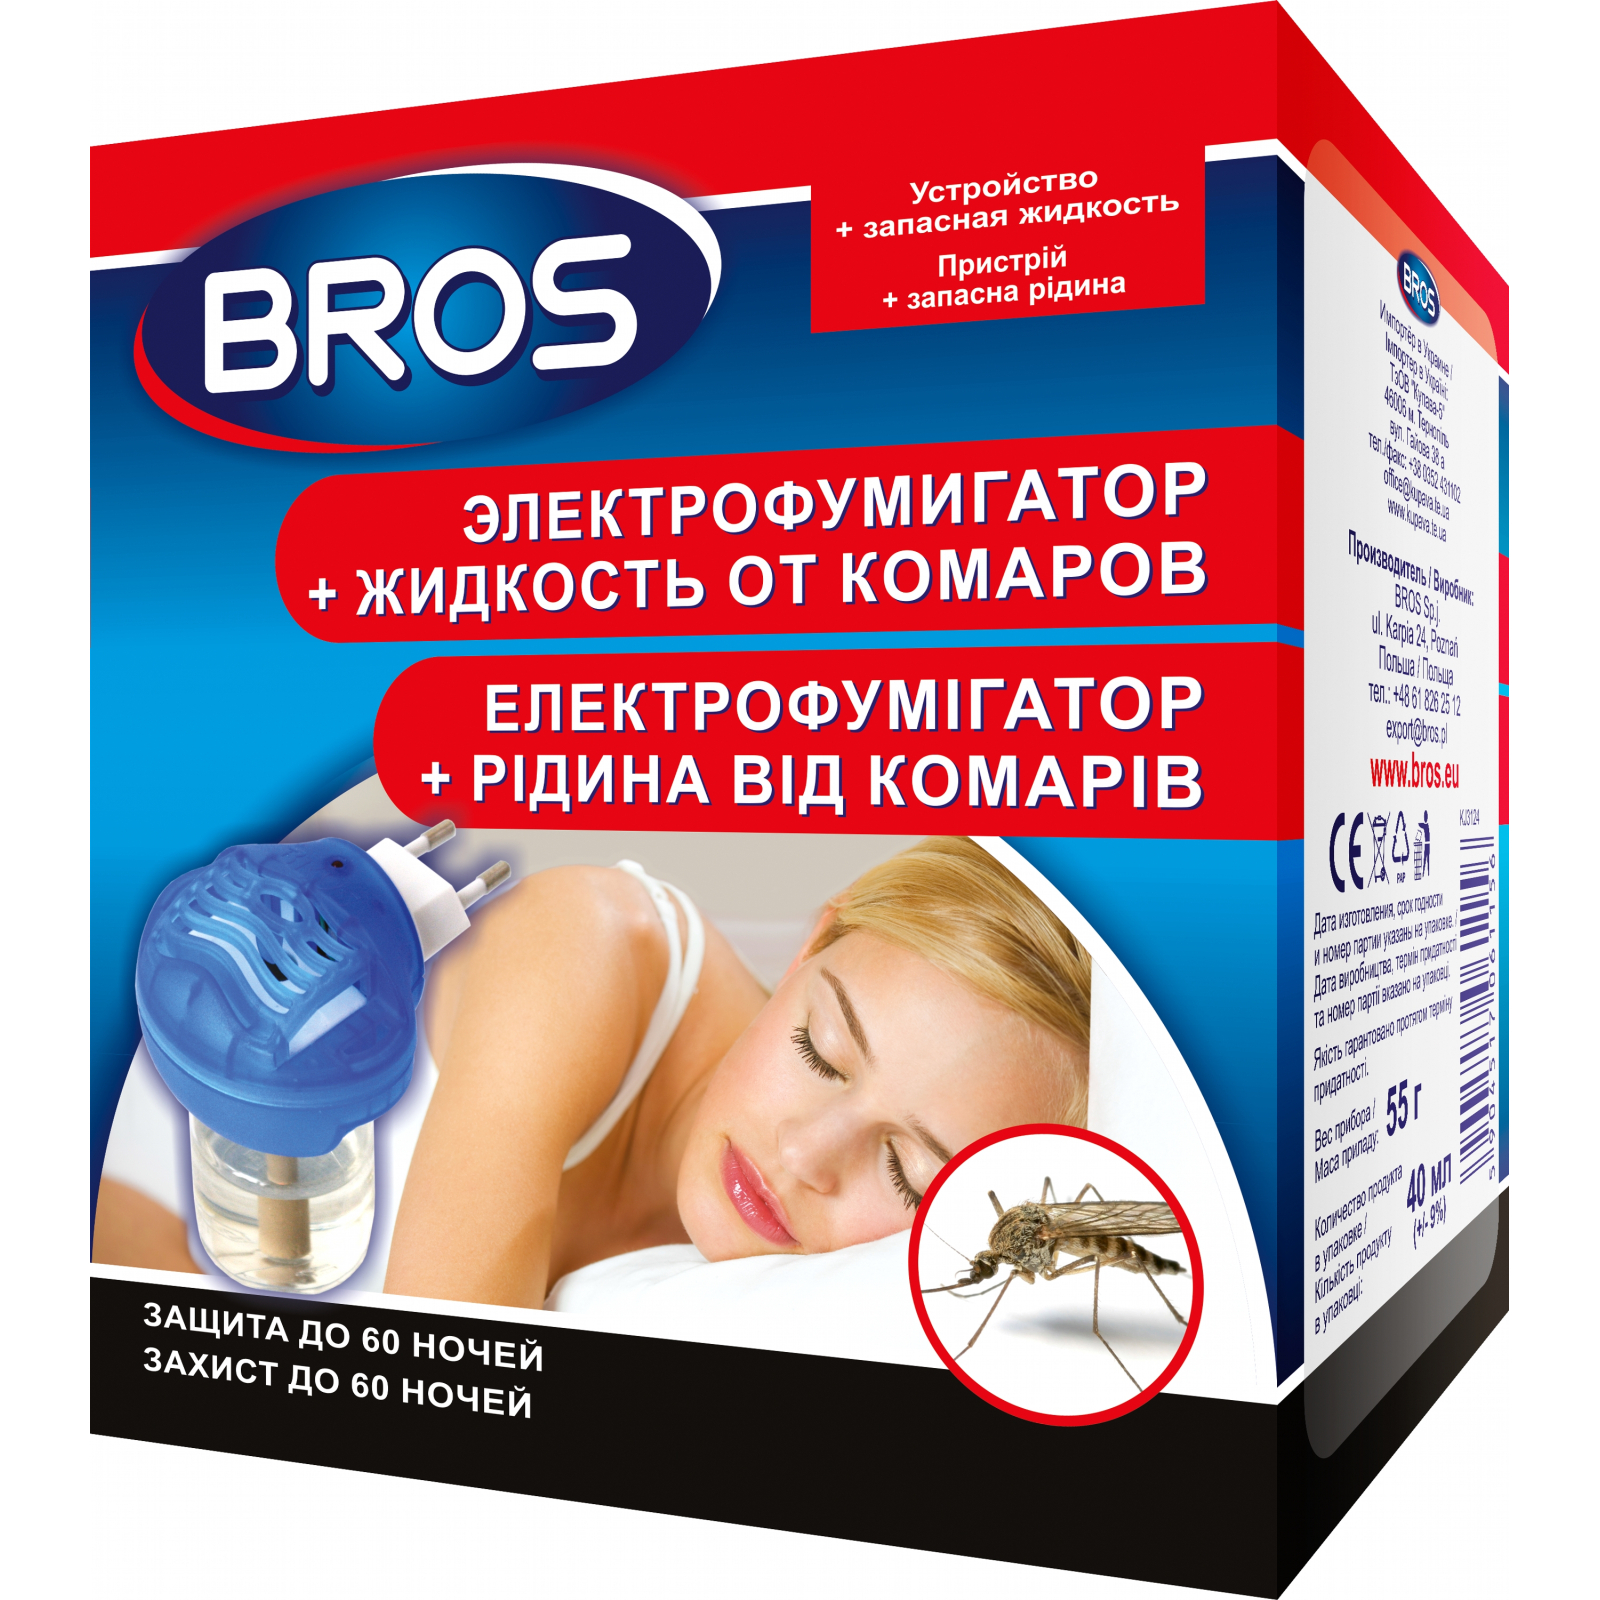 Фумигатор Bros + жидкость против комаров 60 ночей (5904517061156)